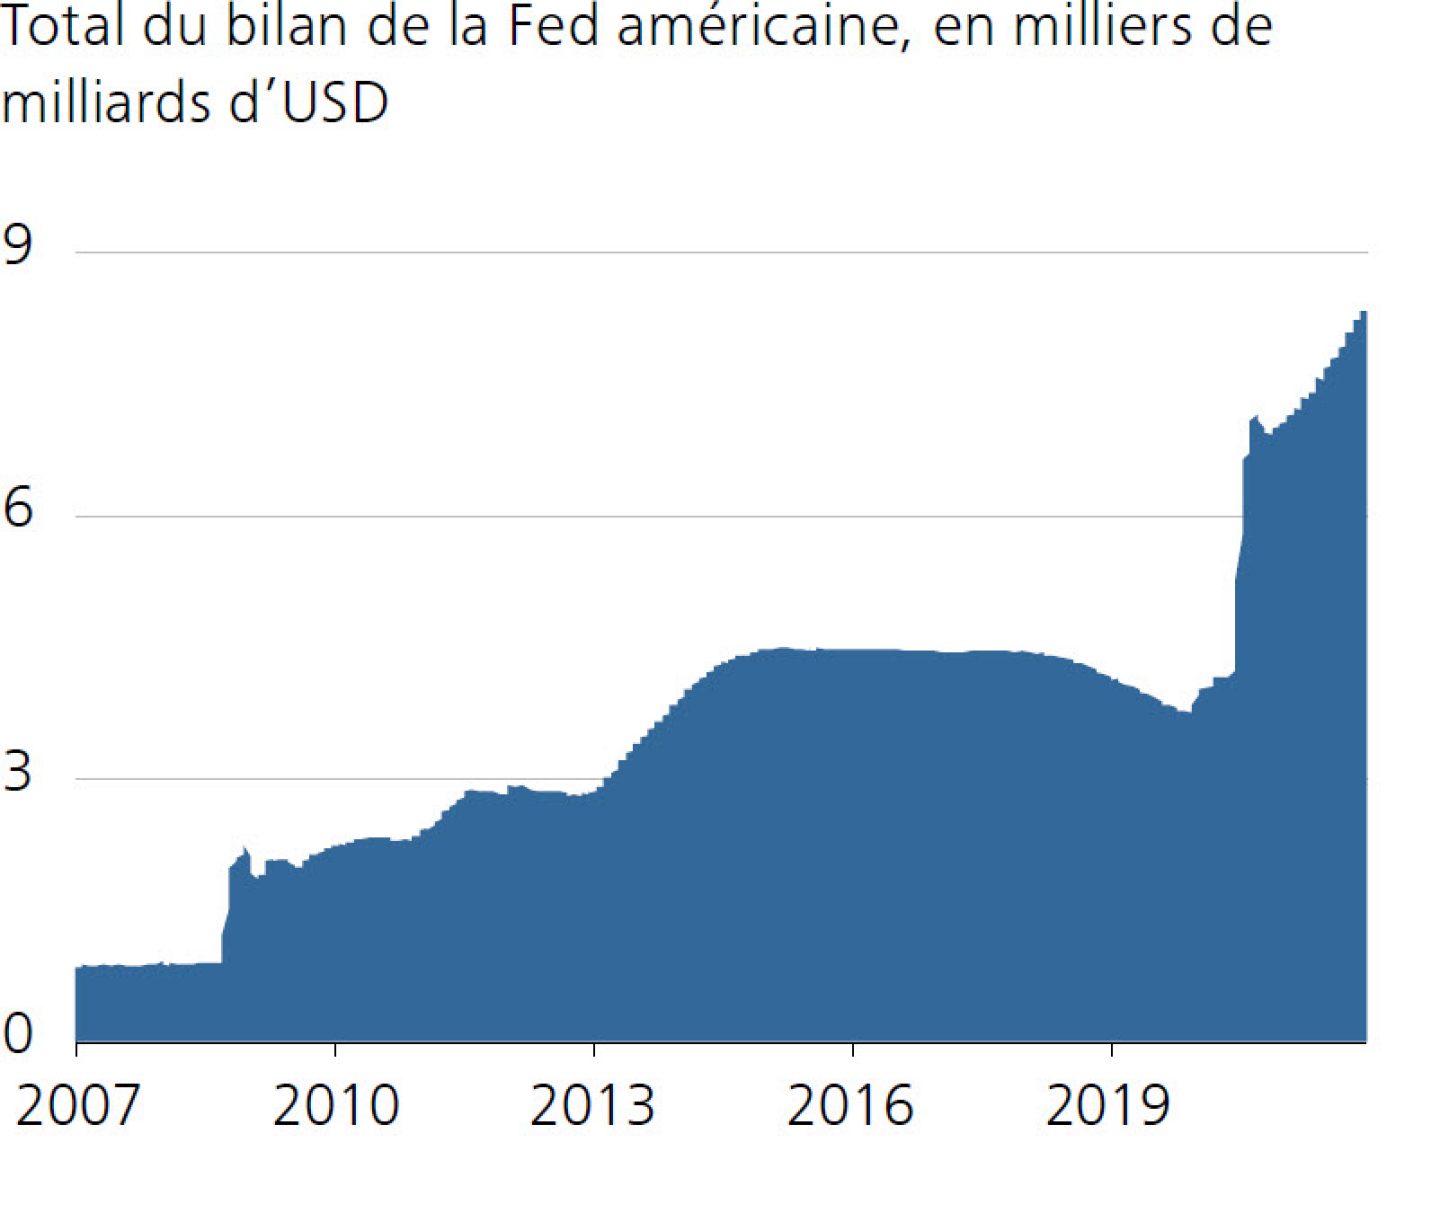 Total du bilan de la Fed américaine, en milliers de milliards d’USD